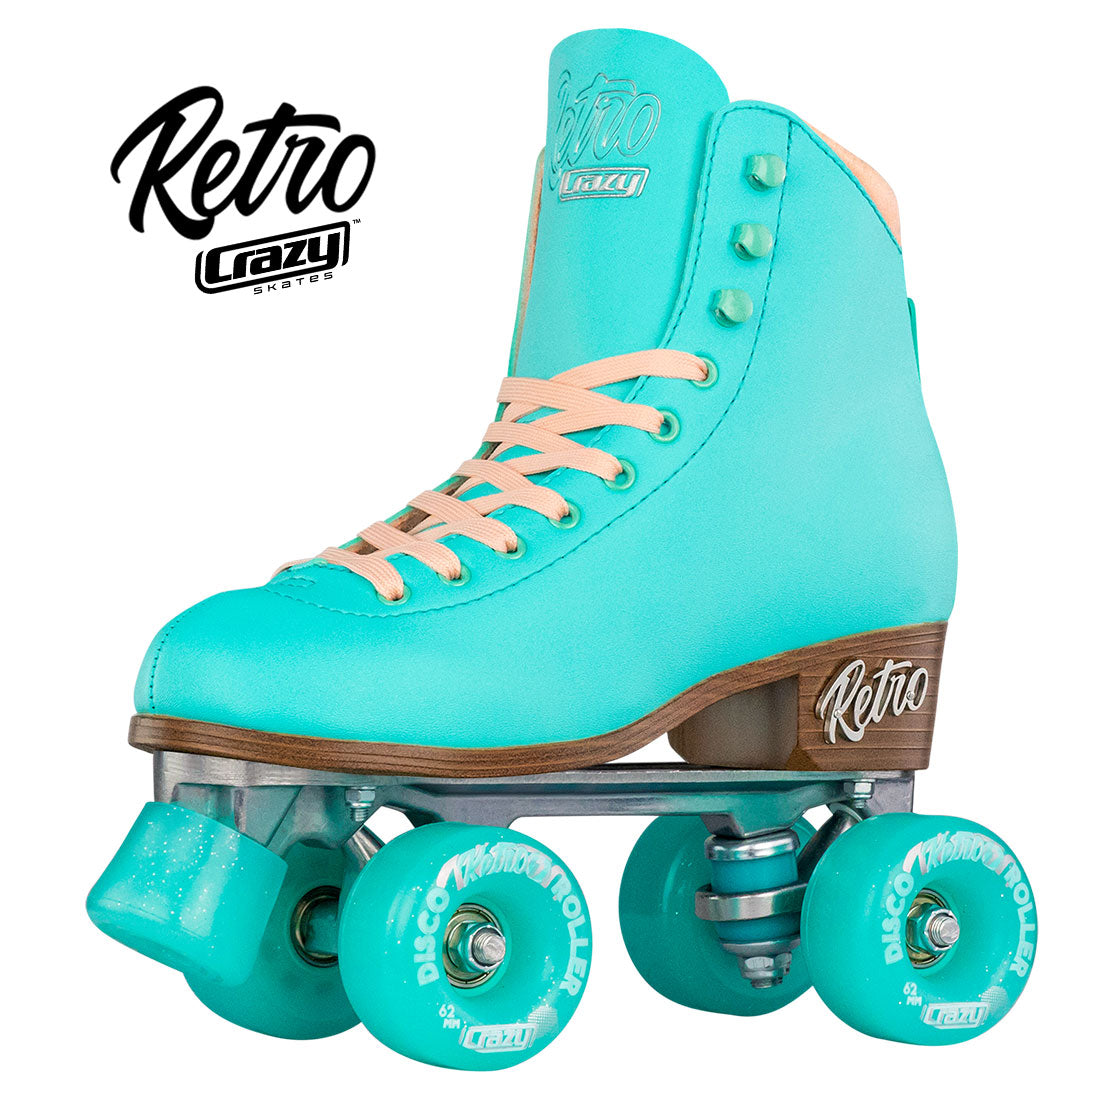 Crazy Retro Roller Teal - Adult Roller Skates